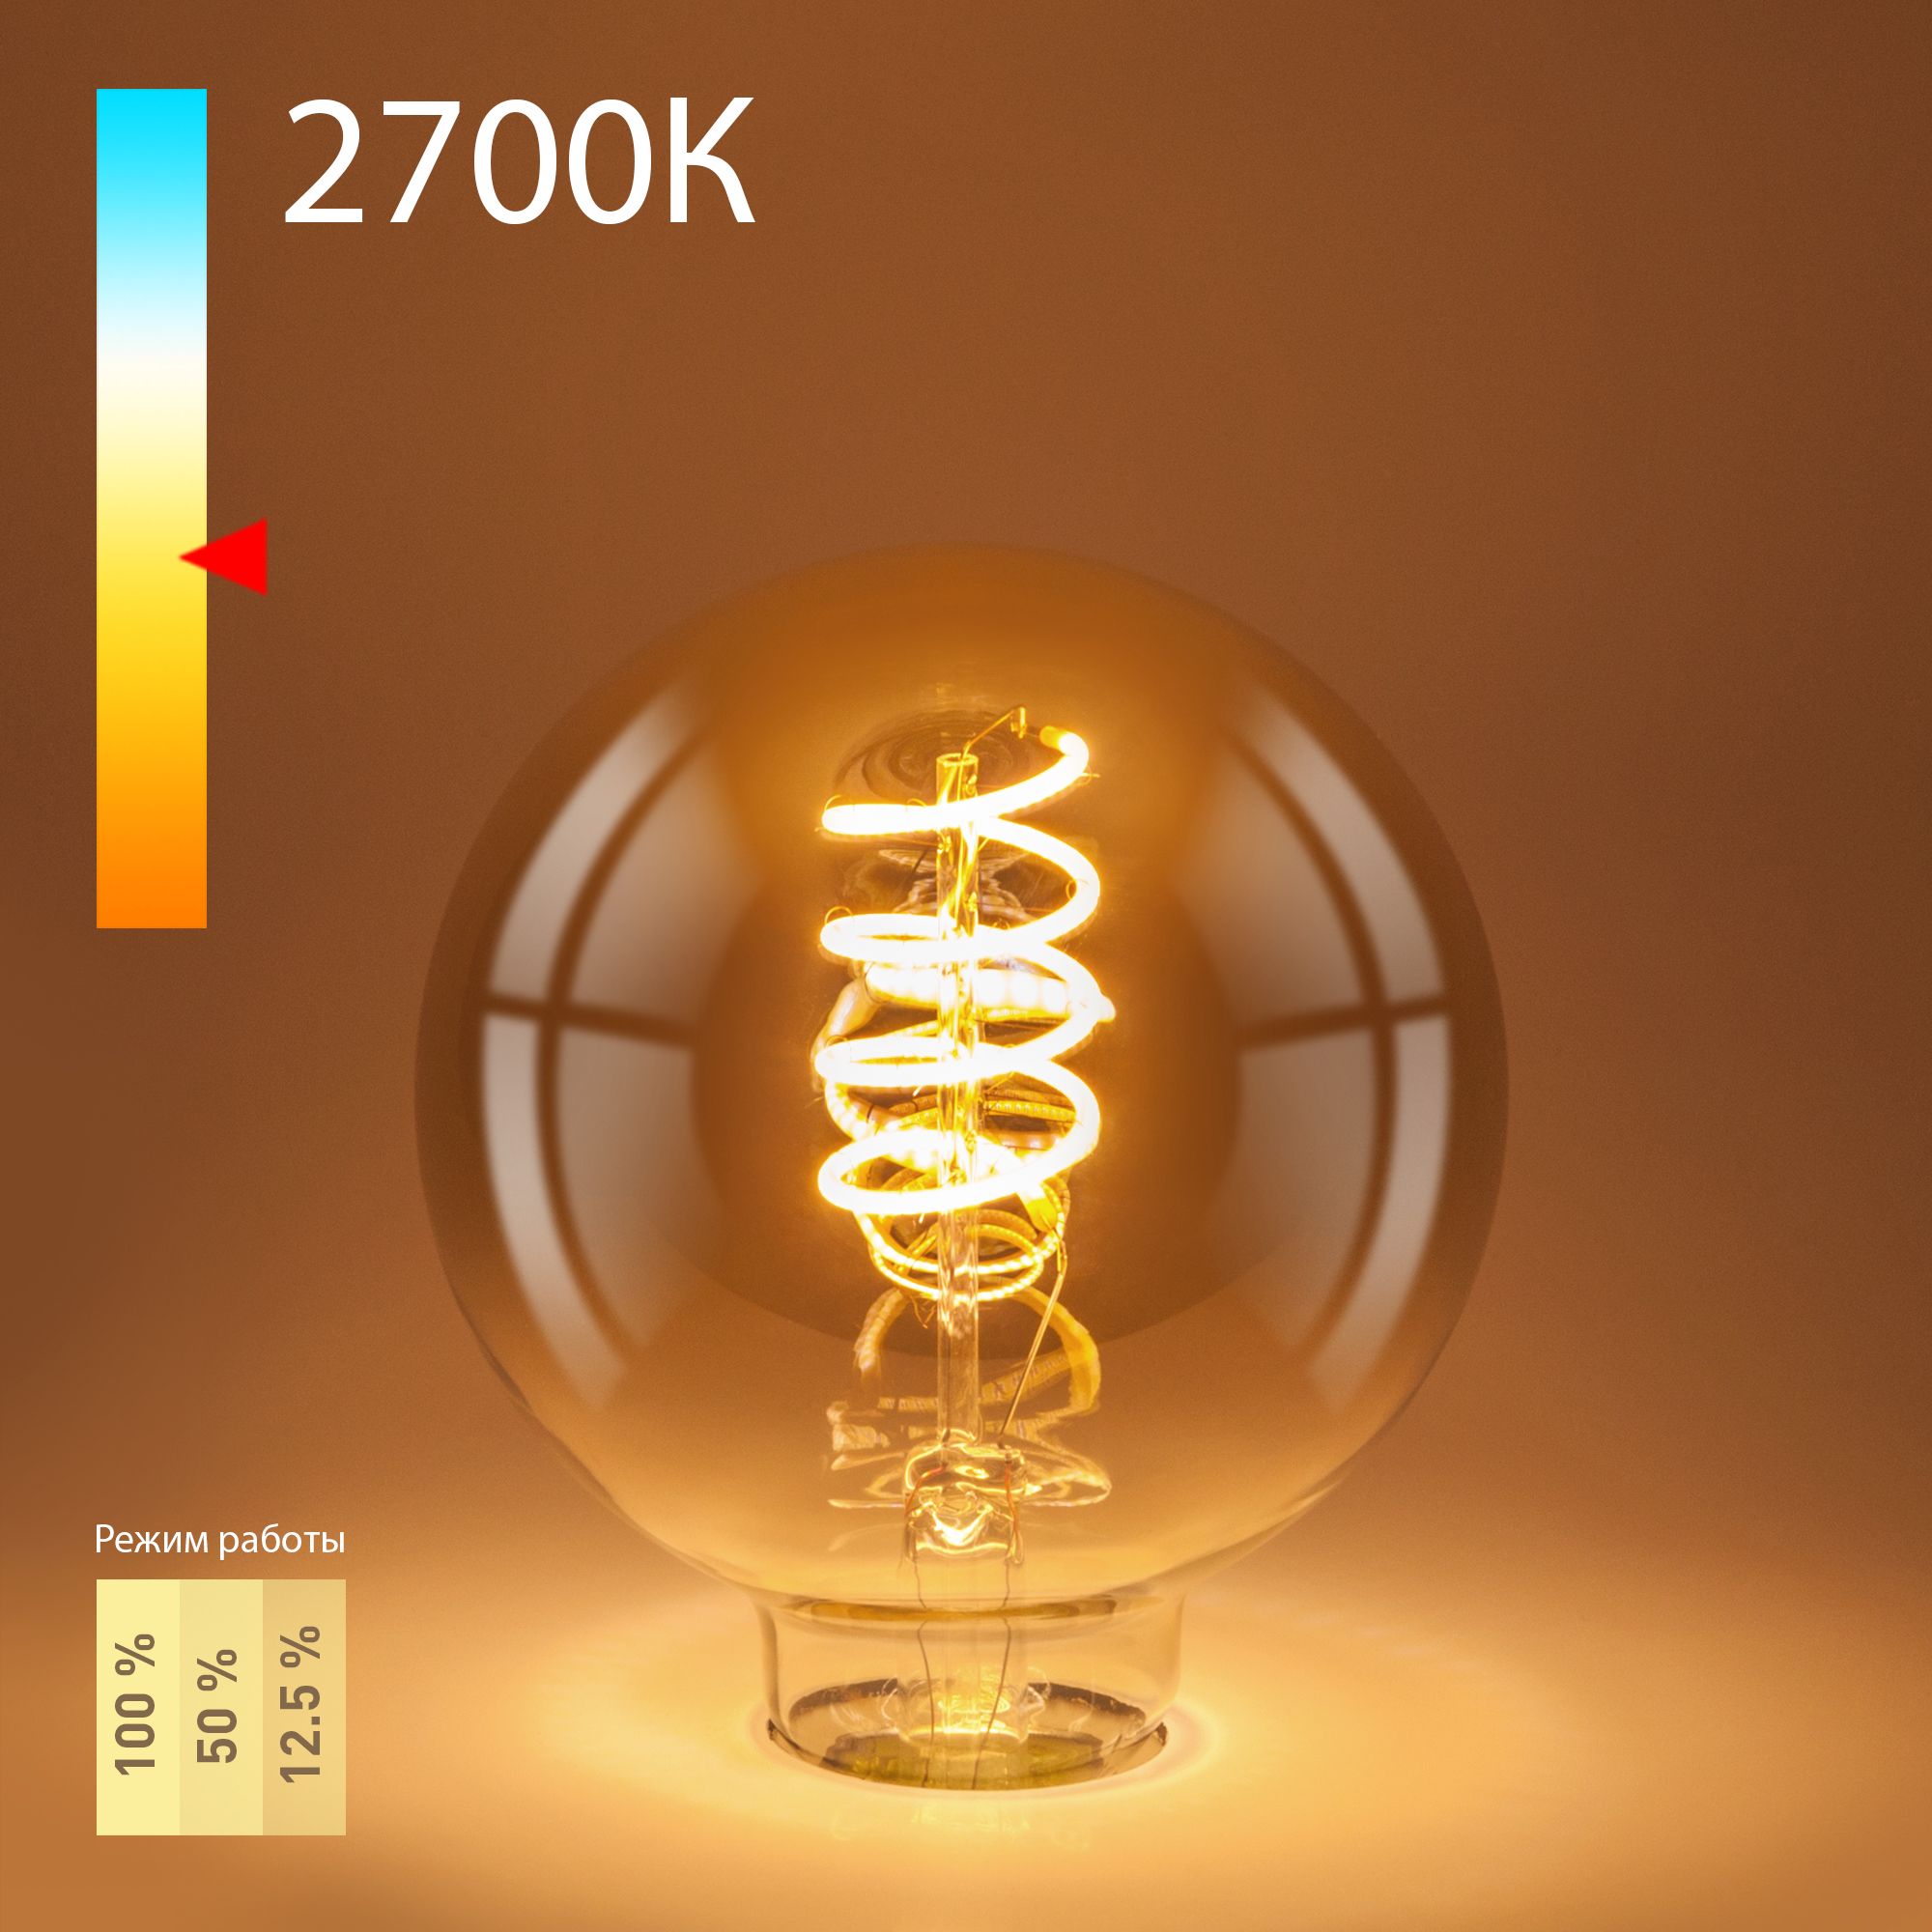 Филаментная светодиодная лампа Dimmable 5W 2700K E27 (G95 тонированный) BLE2747